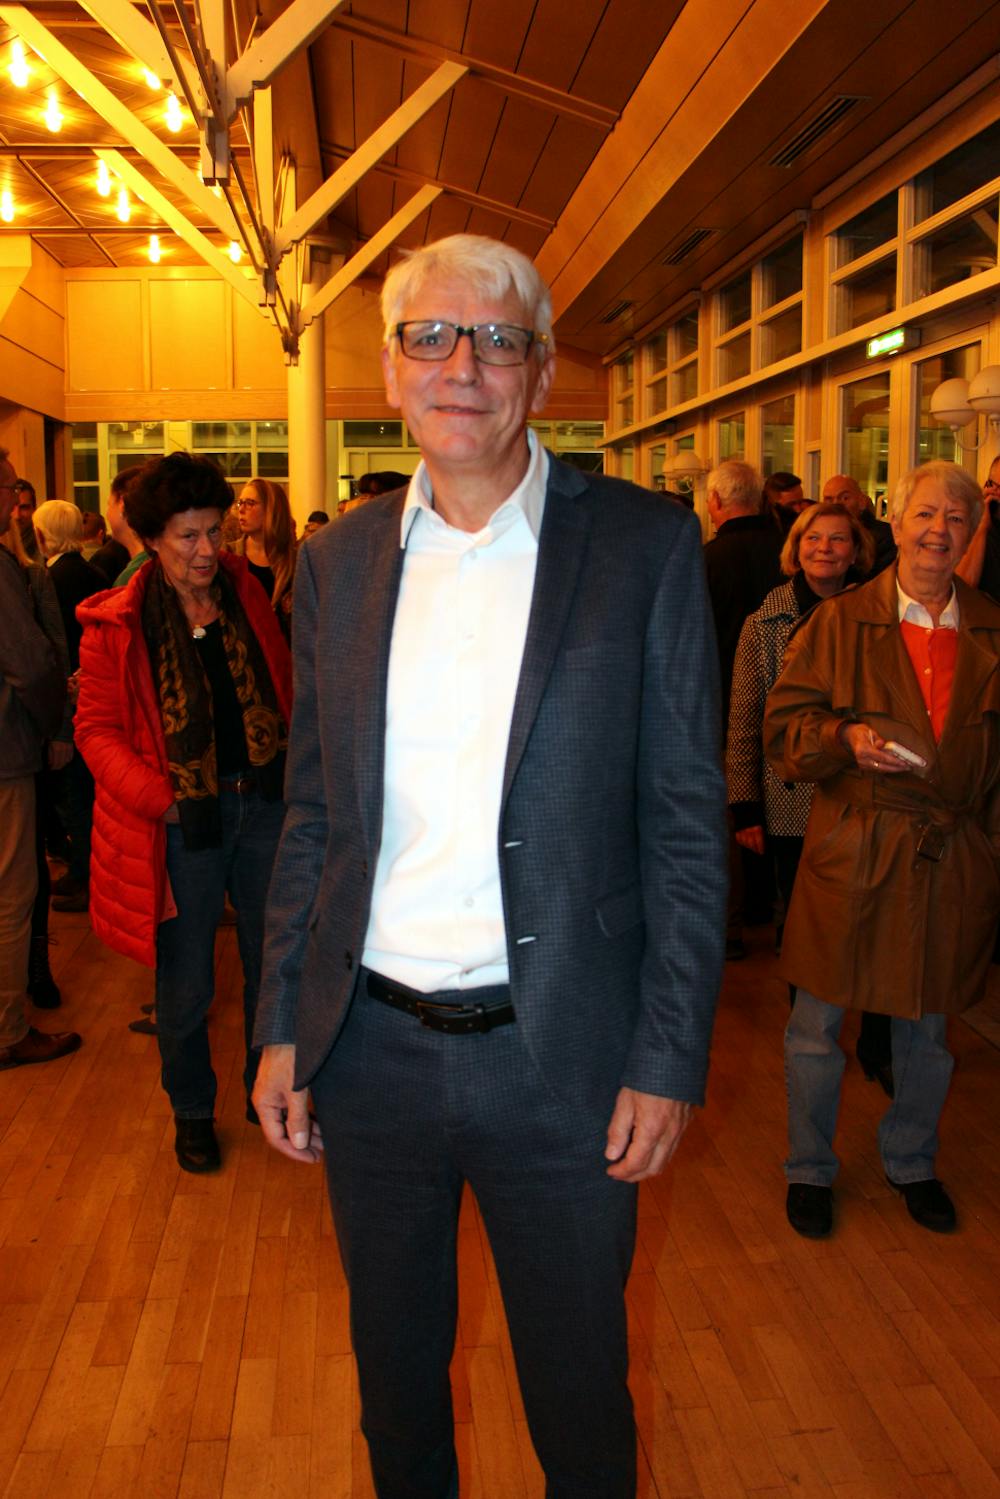 Klaus Hoffmann ist der neue Herrenalber Bürgermeister. © Stadt Bad Herrenalb